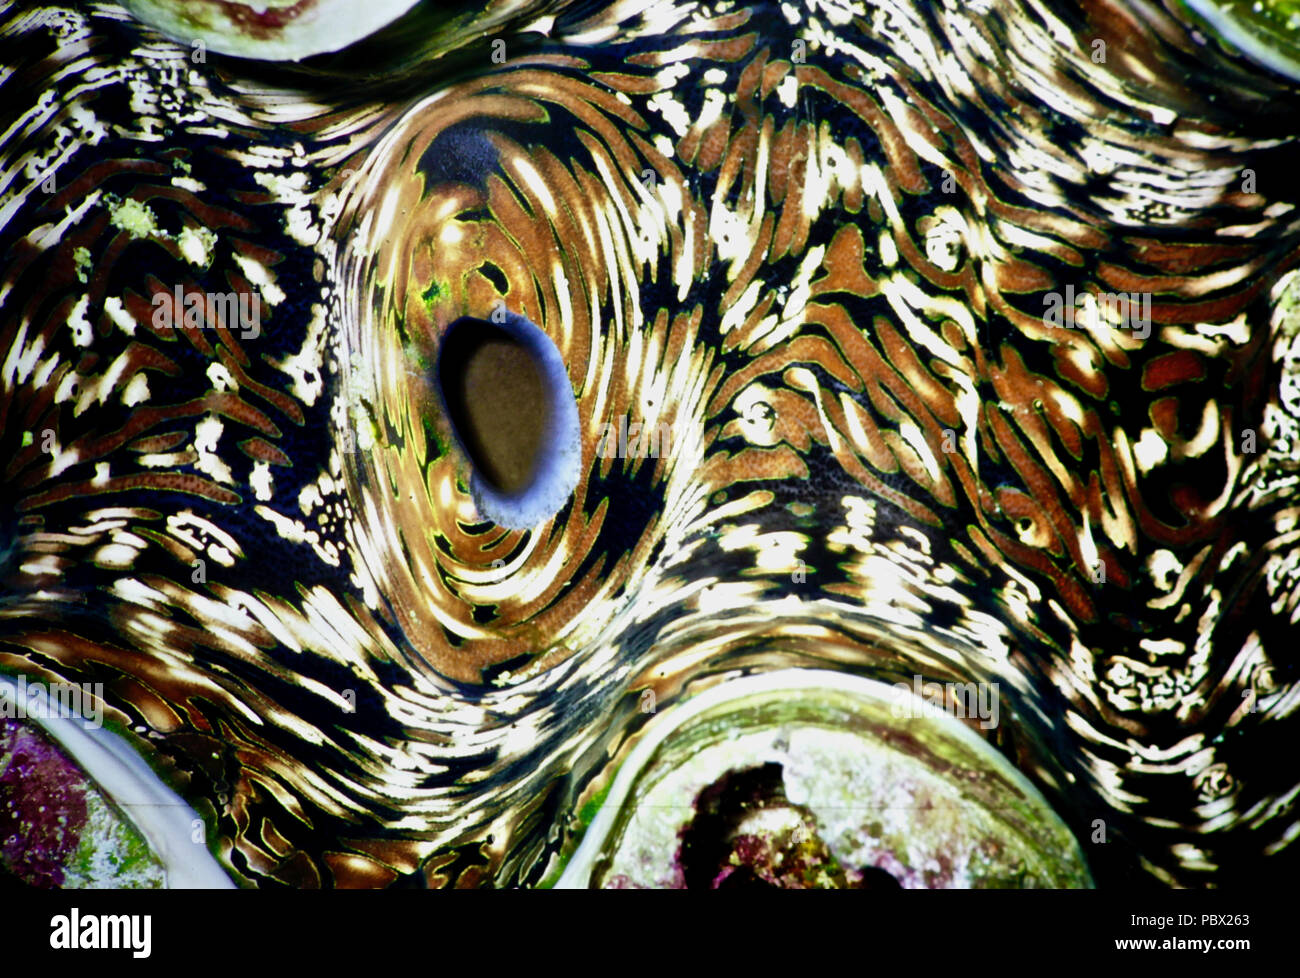 Questa mostra i tessuti di un gigante di clam (Tridacna gigas). Gli individui possono crescere fino a un metro di lunghezza e pesare 200 kg e vivere per 100 anni. La suggestiva e bei modelli nei molluschi mantello sono formate da multi-colore di colonie di unicellulari dinoflagellato alghe simbionti. In cambio di un posto sicuro in cui vivere, le alghe forniscono le vongole con zuccheri attraverso la fotosintesi. Purtroppo, molluschi giganti stanno diventando rari, a causa degli effetti del riscaldamento globale e dell'inquinamento - e perché la loro carne è molto apprezzato dagli esseri umani. La Lista Rossa IUCN afferma che è vulnerabile. Mar Rosso egiziano Foto Stock